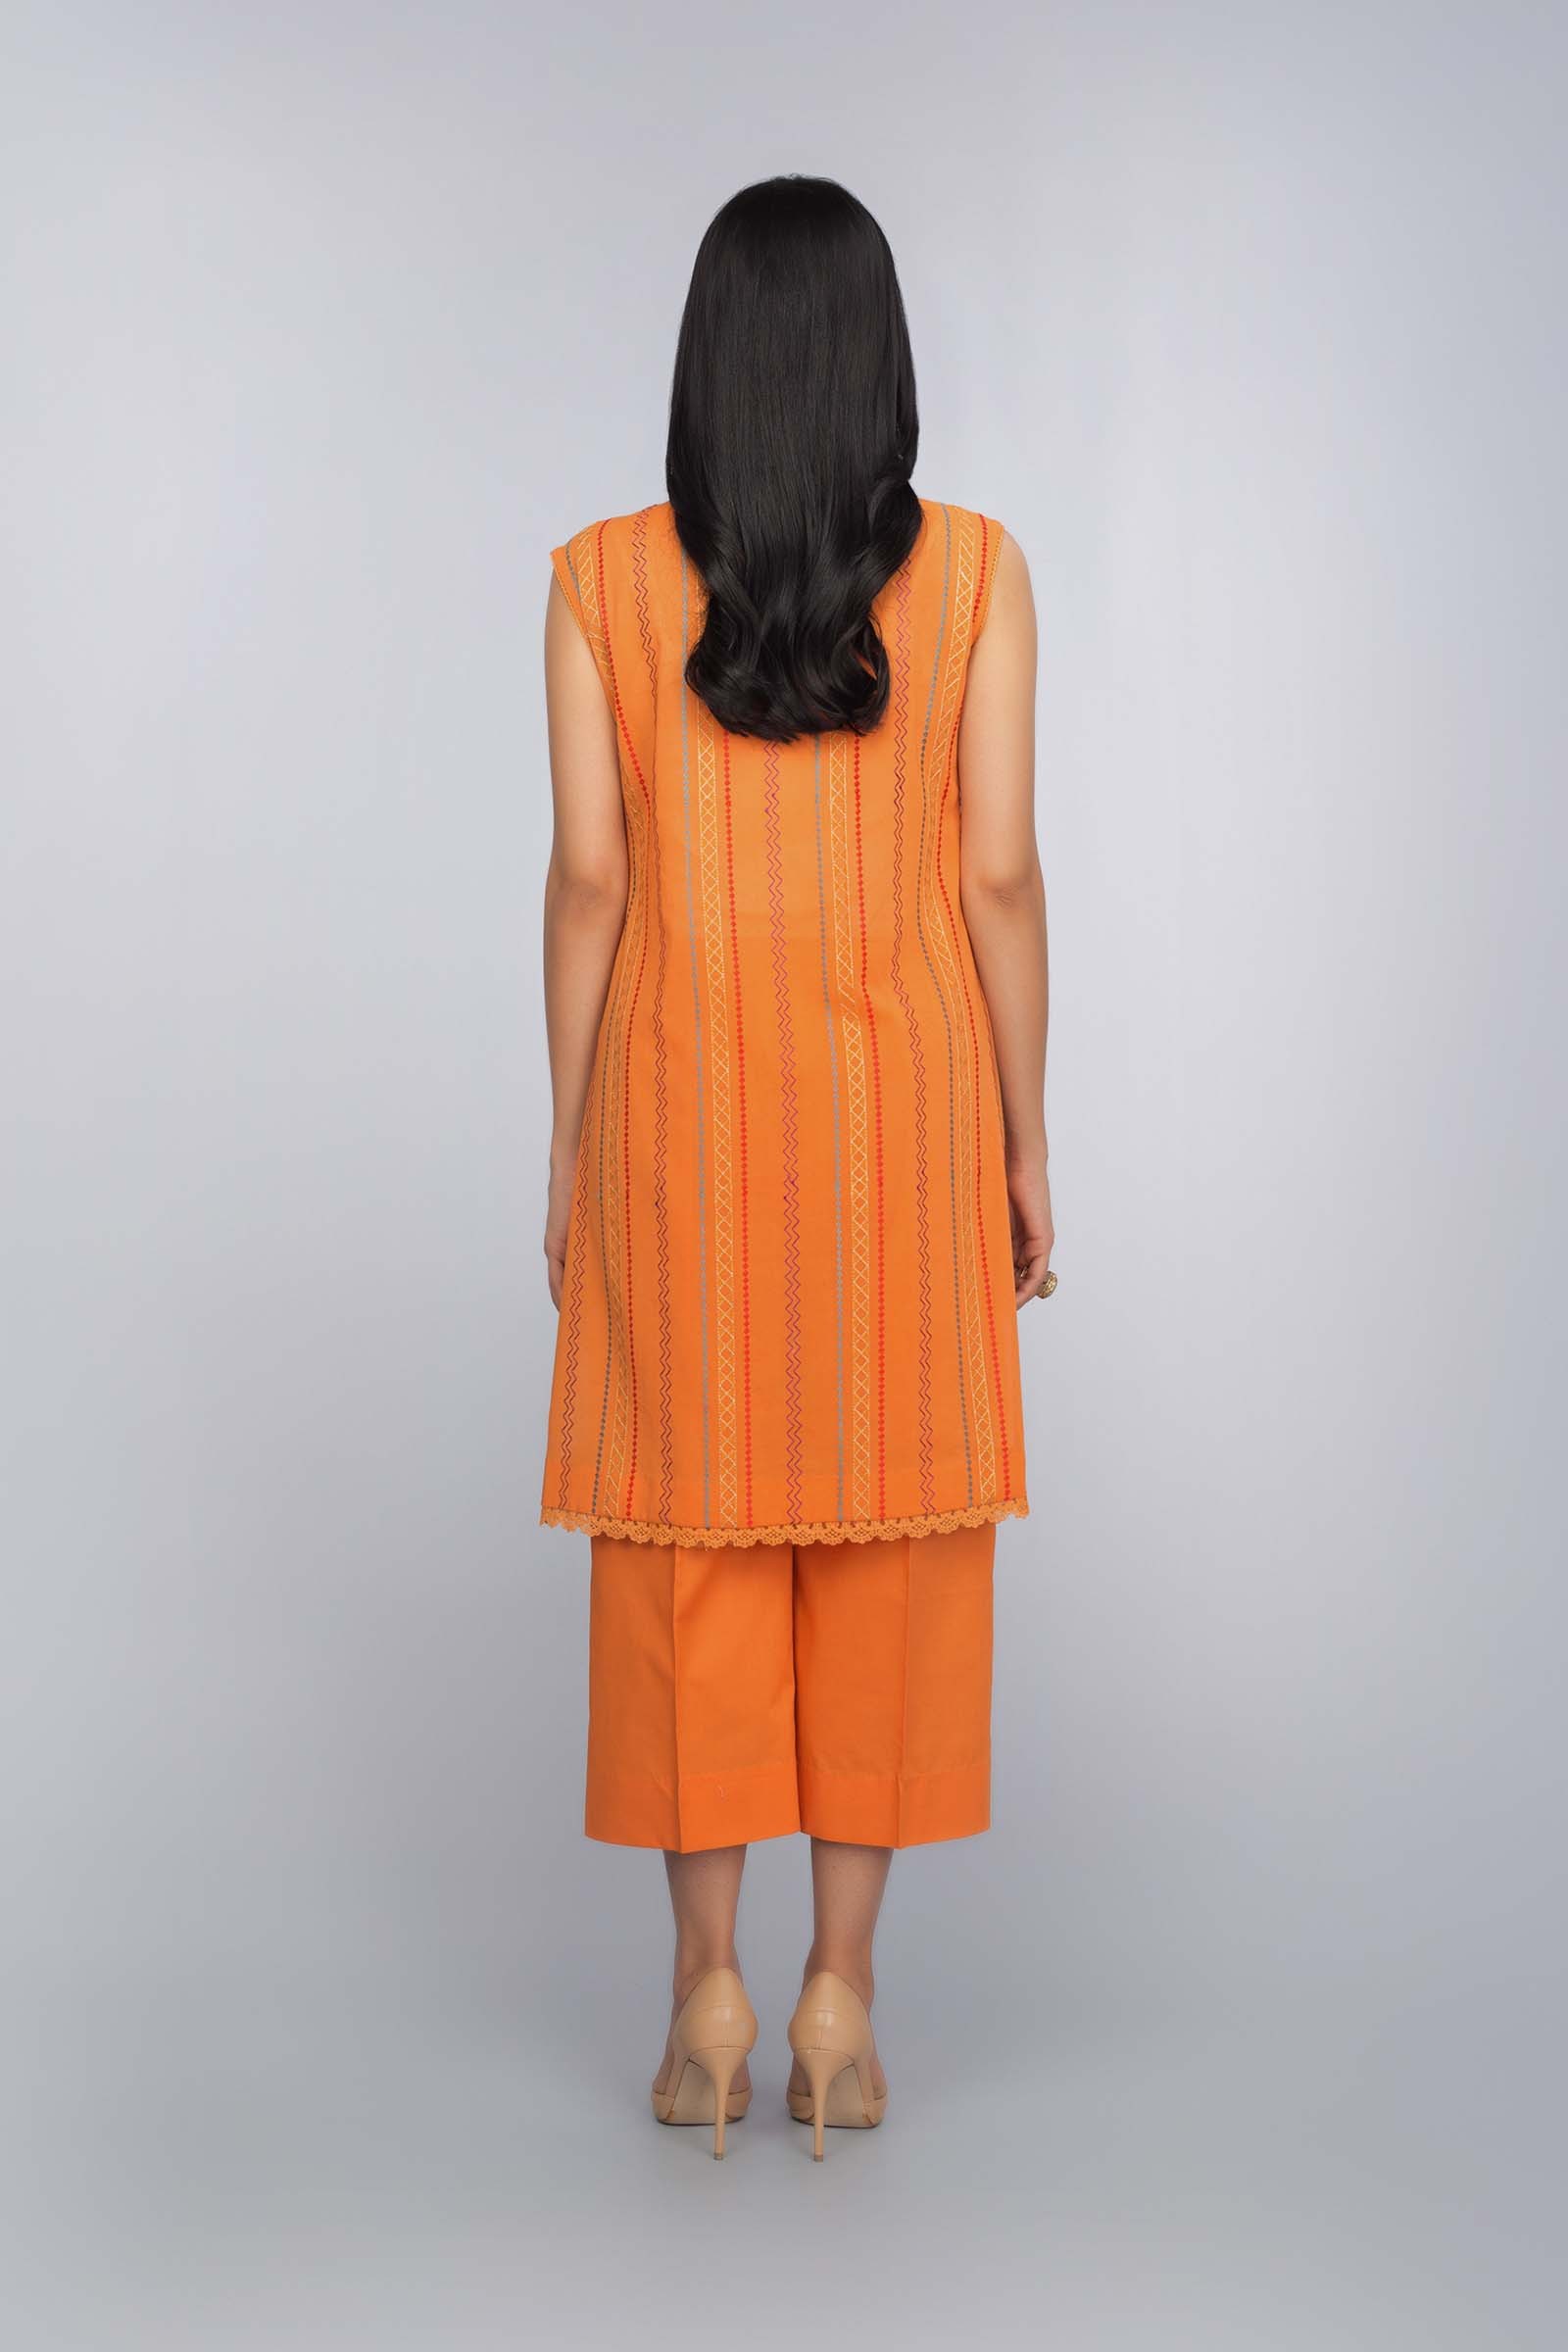 Unstitched Orange Pakistani Suit by Bareeze Online UK 